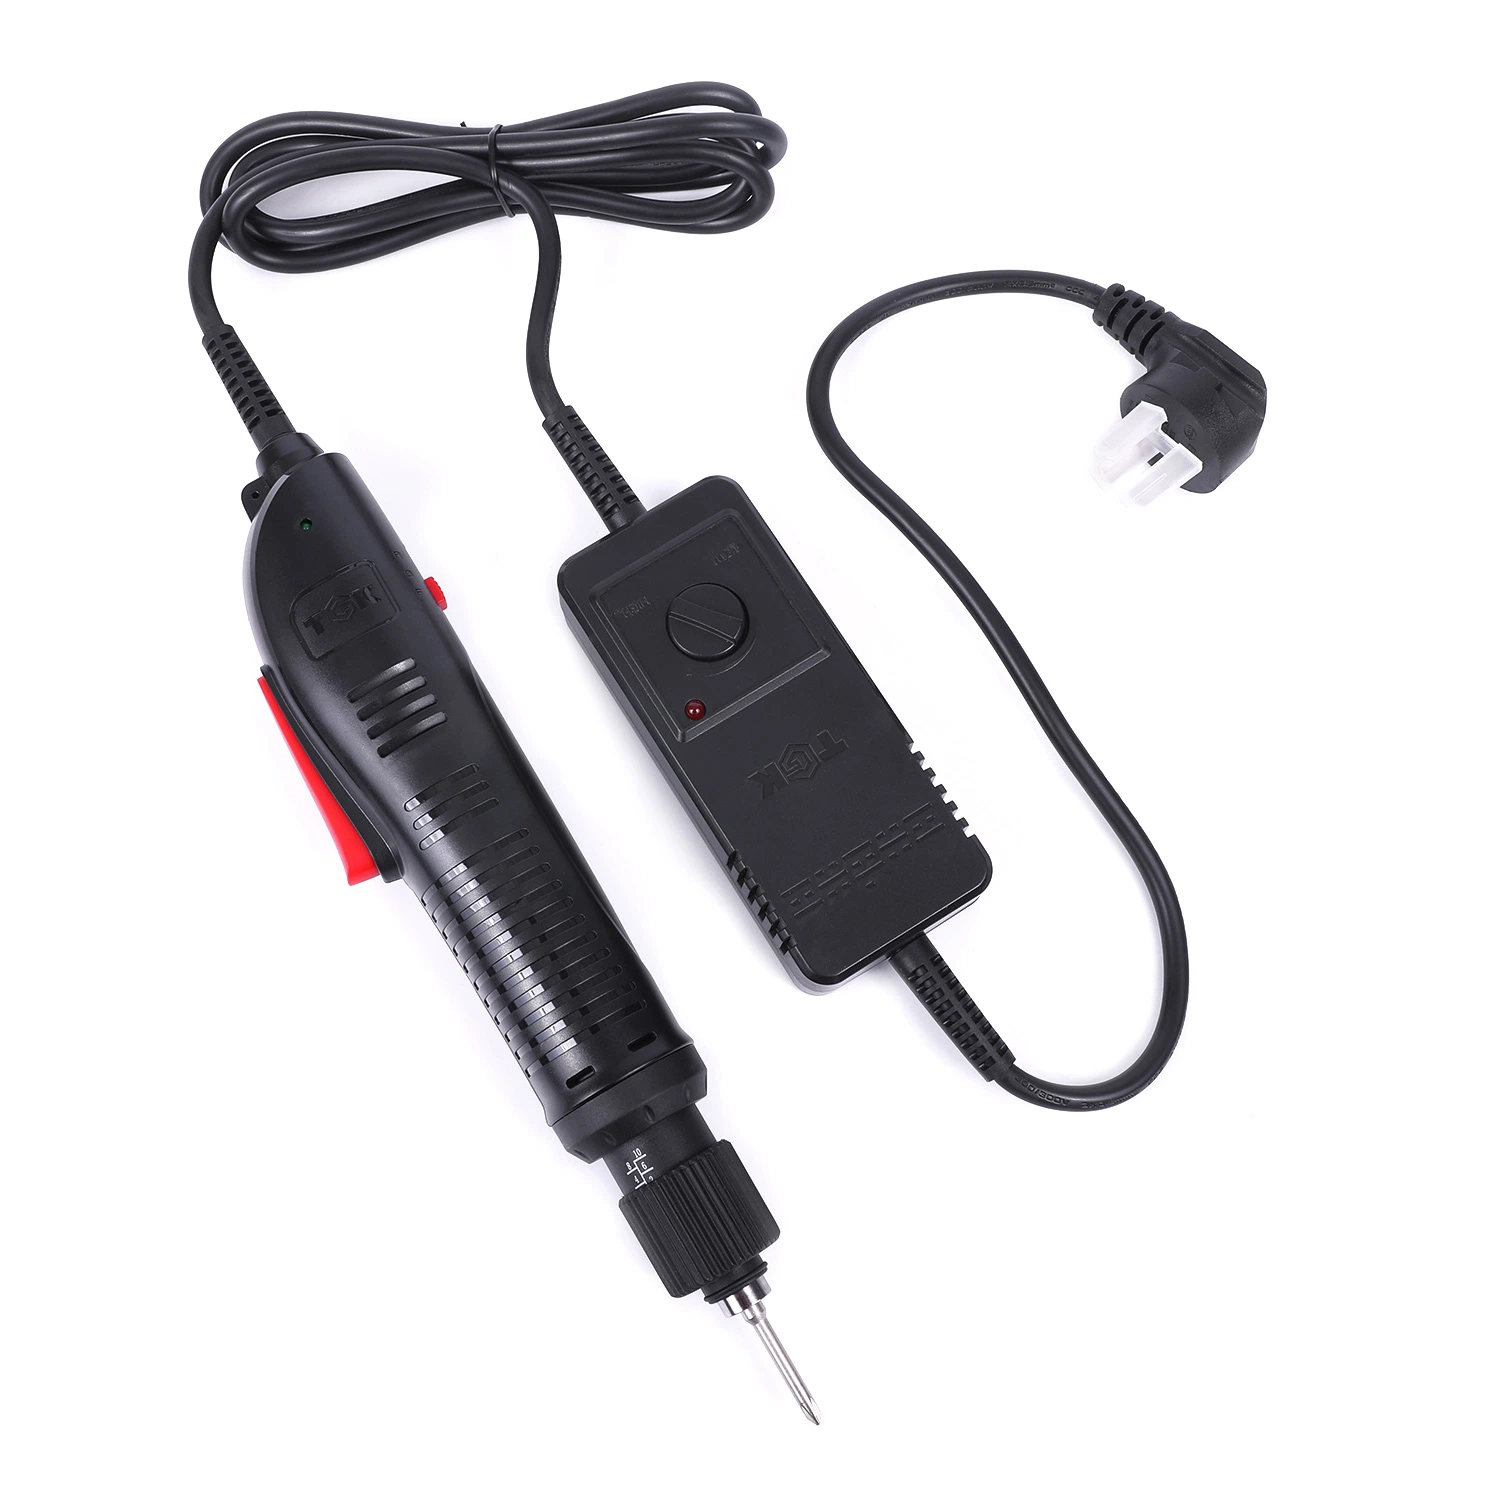 Chave de fenda elétrica com fio de torque para ajudar a apertar alguns itens domésticos PS635